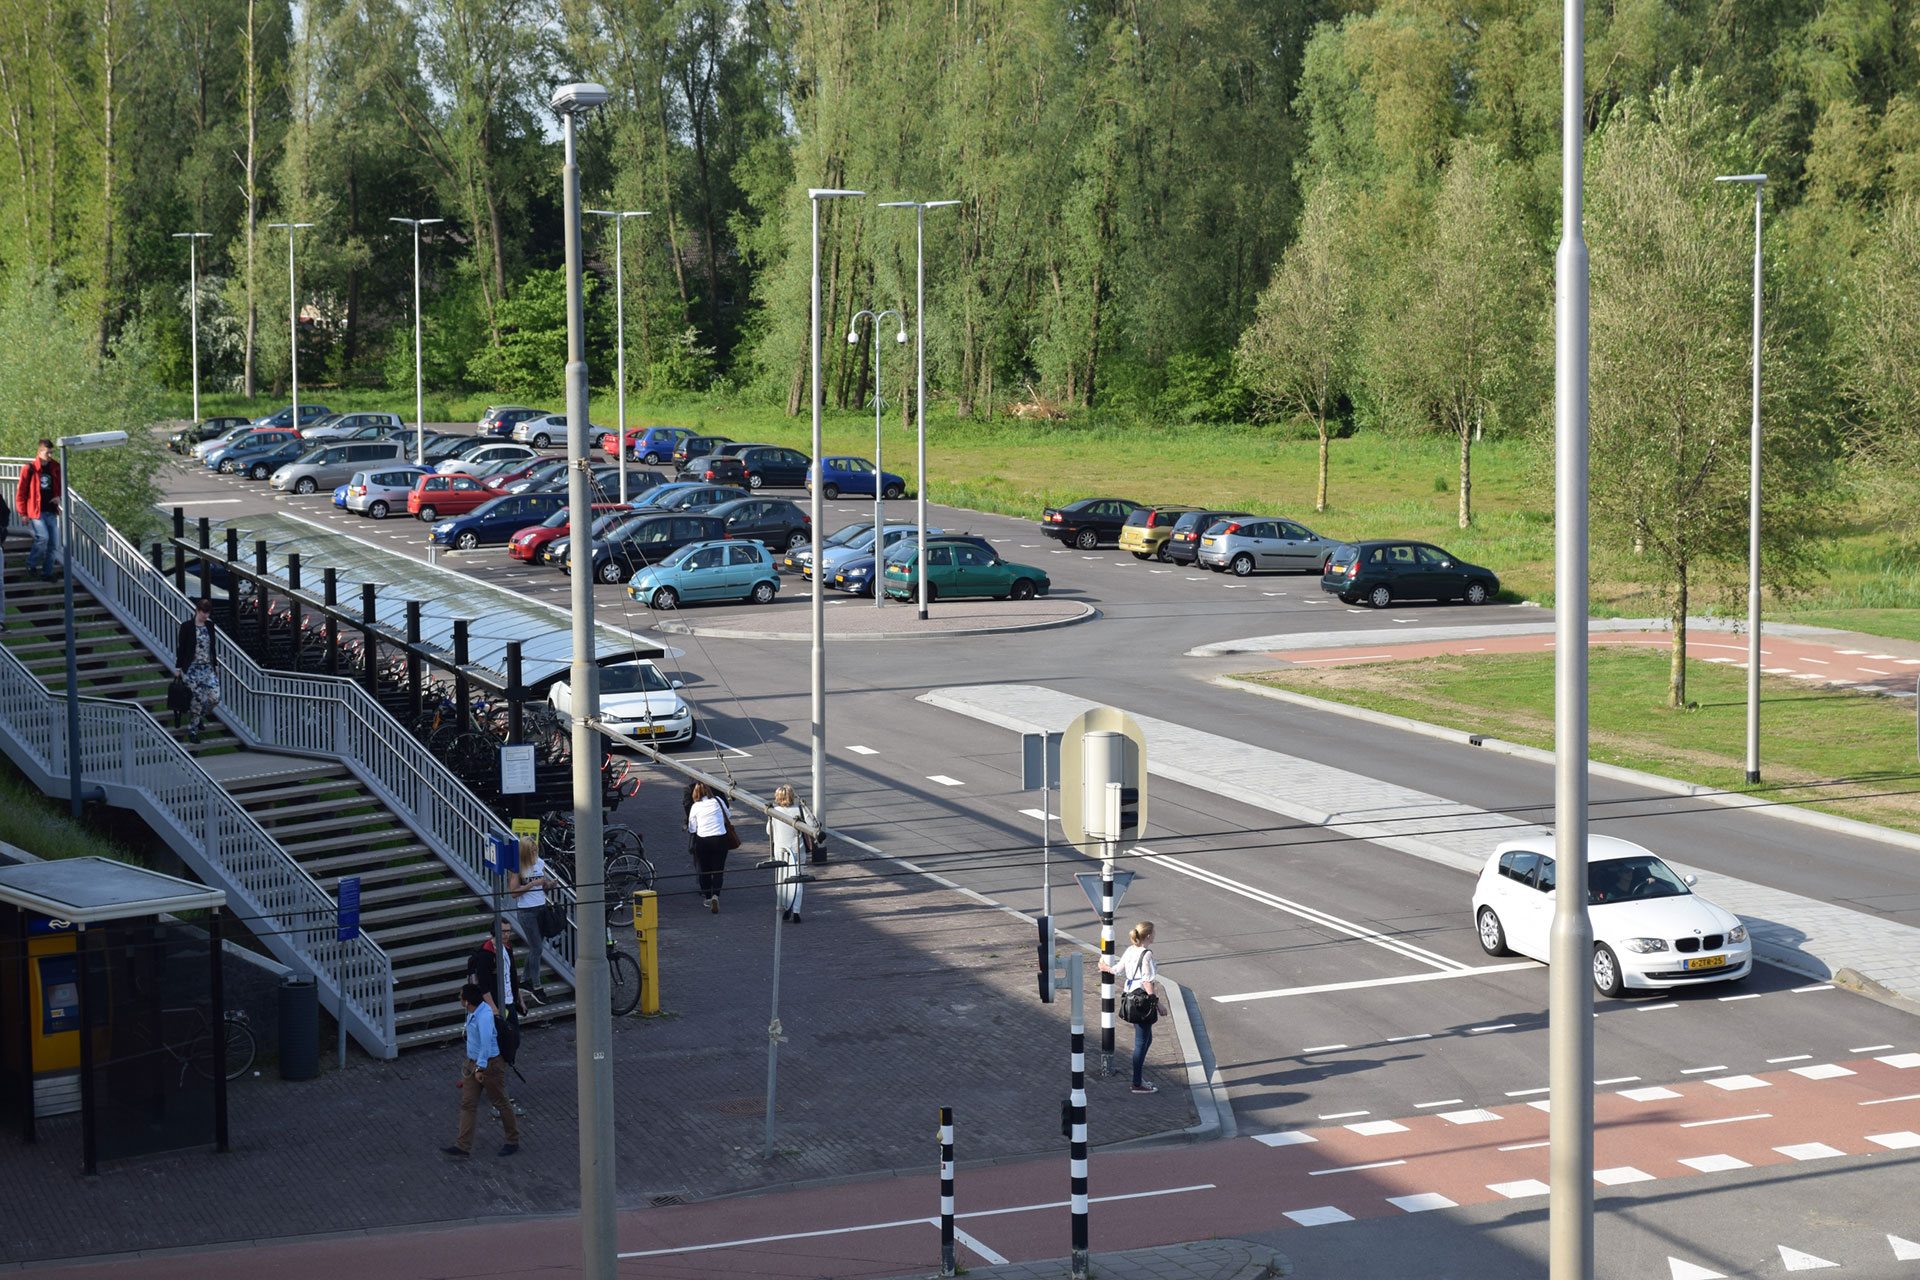 P+R en carpoolplaats naast station, parkeerplaats met auto's